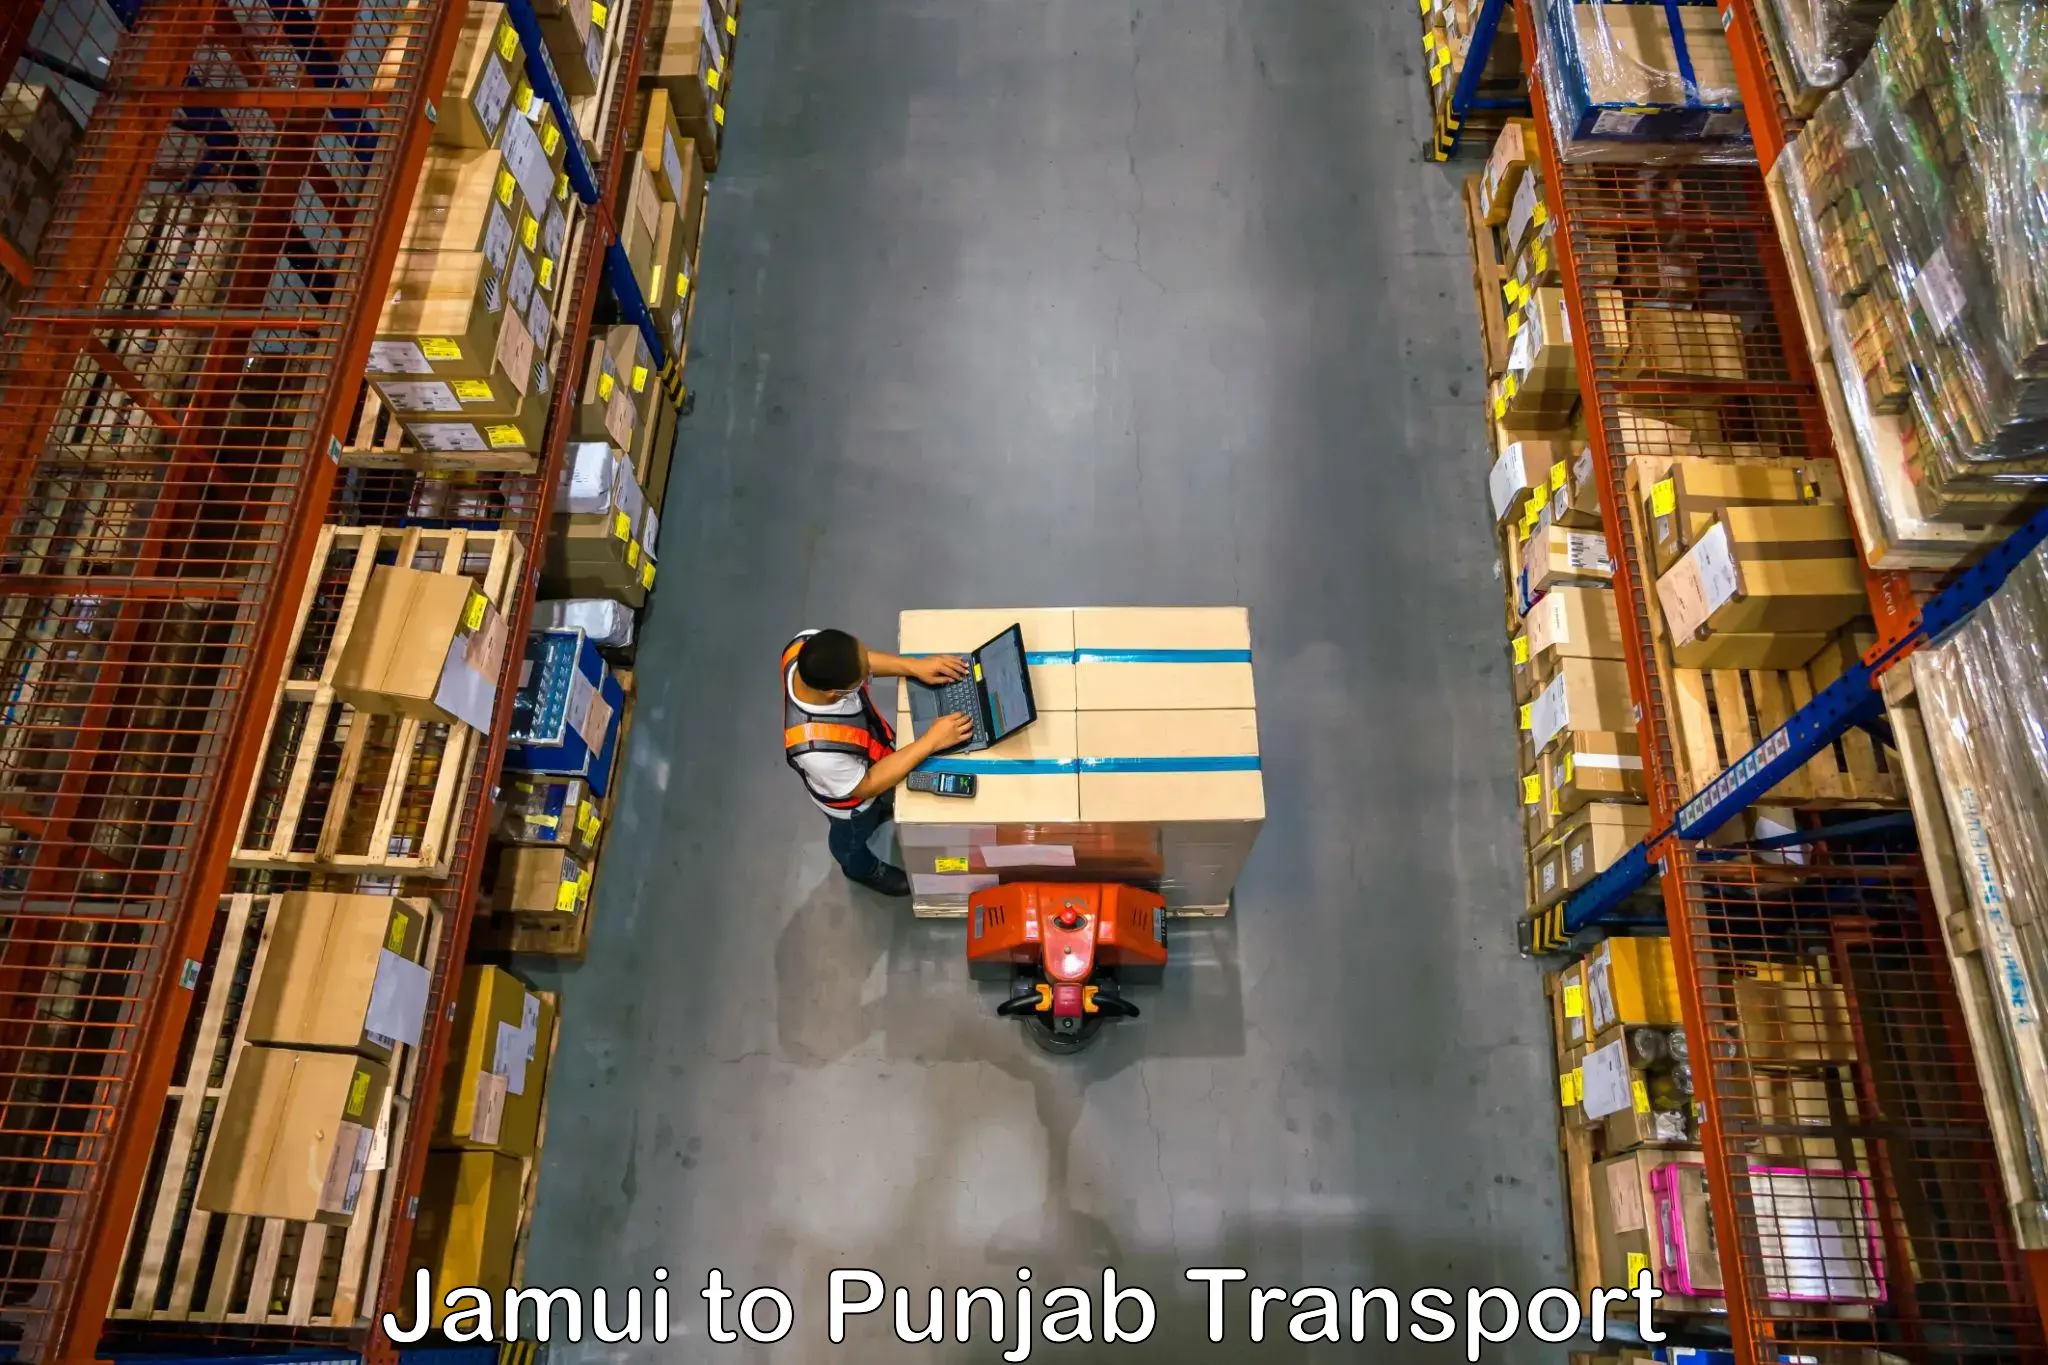 Transport services Jamui to Jalandhar